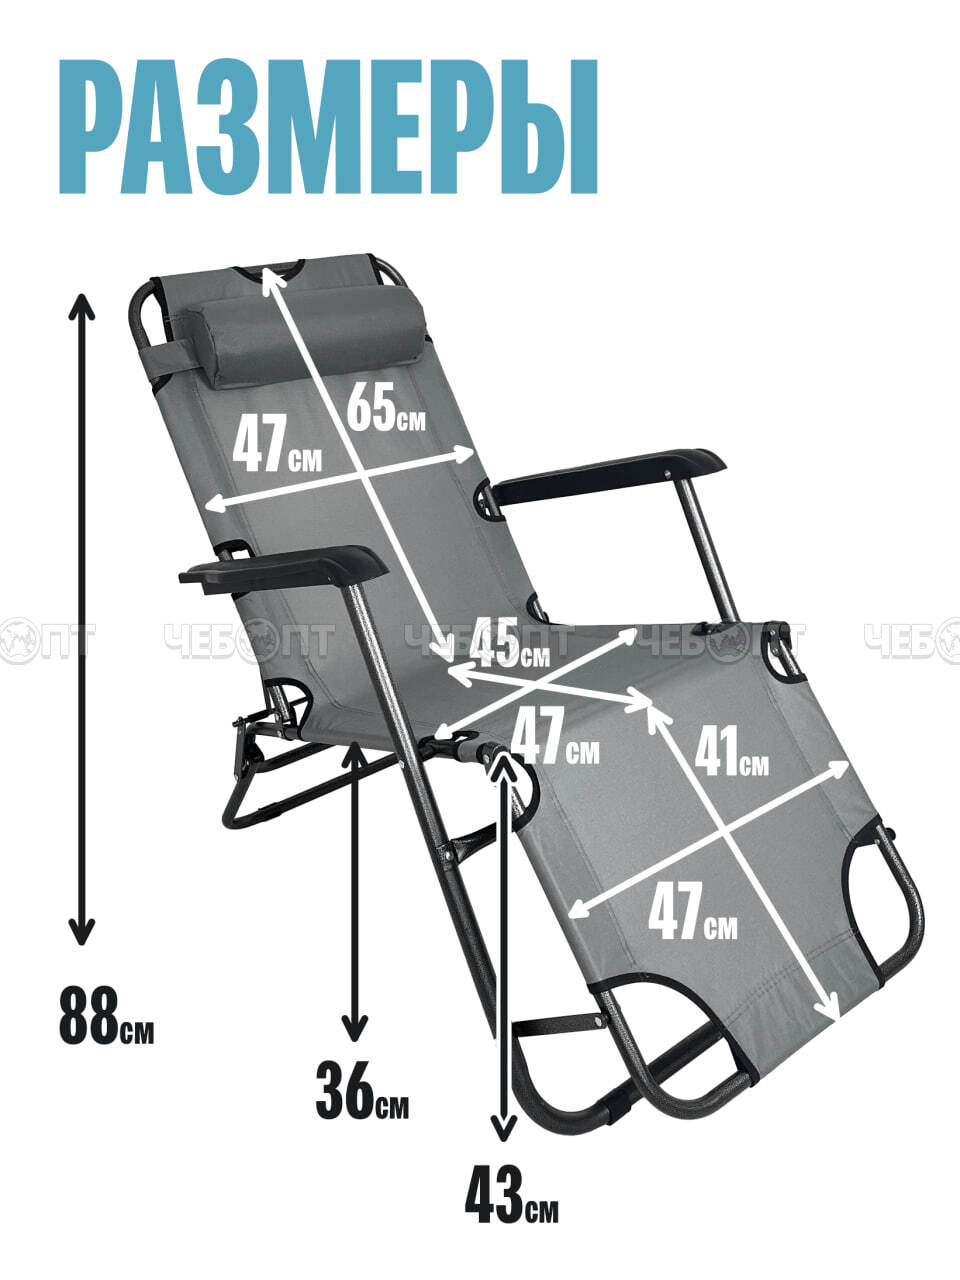 Кресло - шезлонг складное для дачи 1530*590 мм с подголовником, регулируемое, 8 положений (до положения лежа), до 100 кг арт. 290034 $ [4] GOODSEE. ЧЕБОПТ.